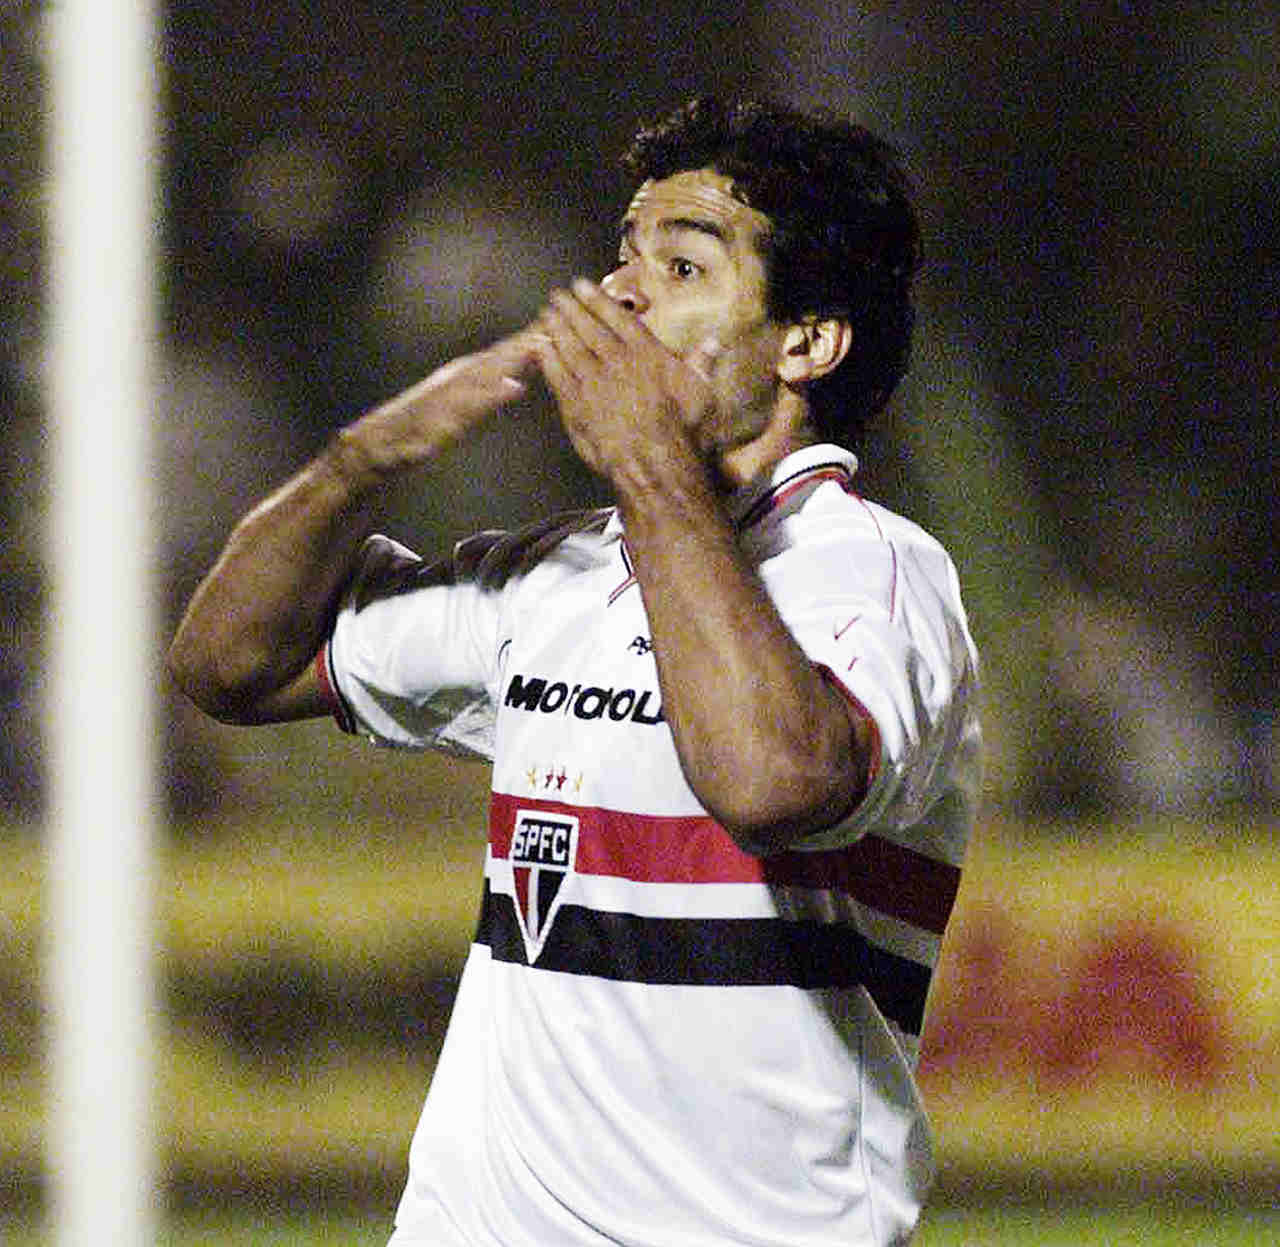 O último gol da carreira do ídolo foi em um clássico de mata-mata no estádio do rival. E de letra! Saiu na vitória por 3 a 2 sobre o Palmeiras nas quartas de final da Copa do Brasil de 2000, no Palestra Itália.